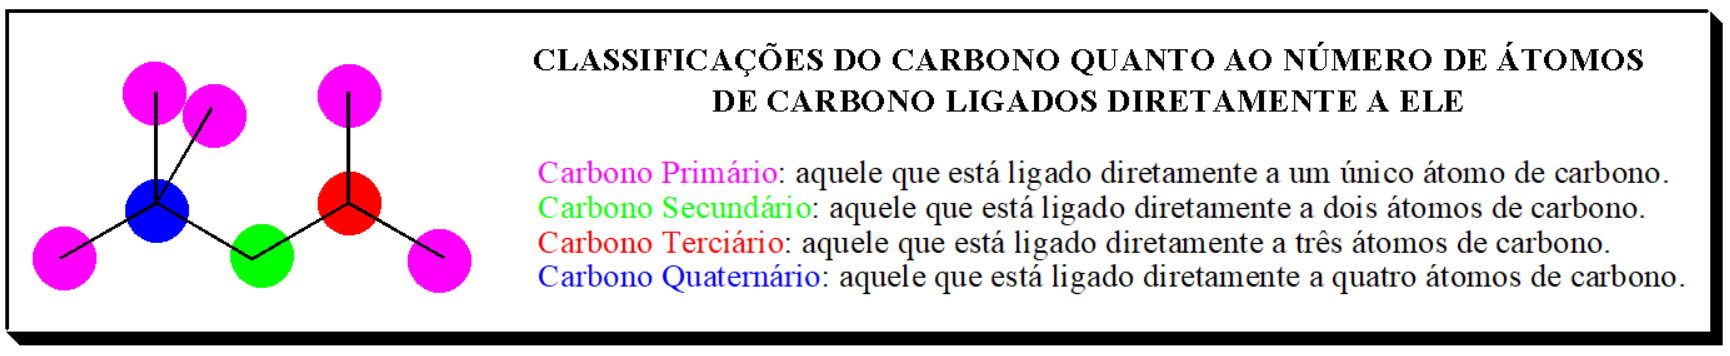 Classificações do carbono quanto ao número de
átomos de carbono diretamente ligados